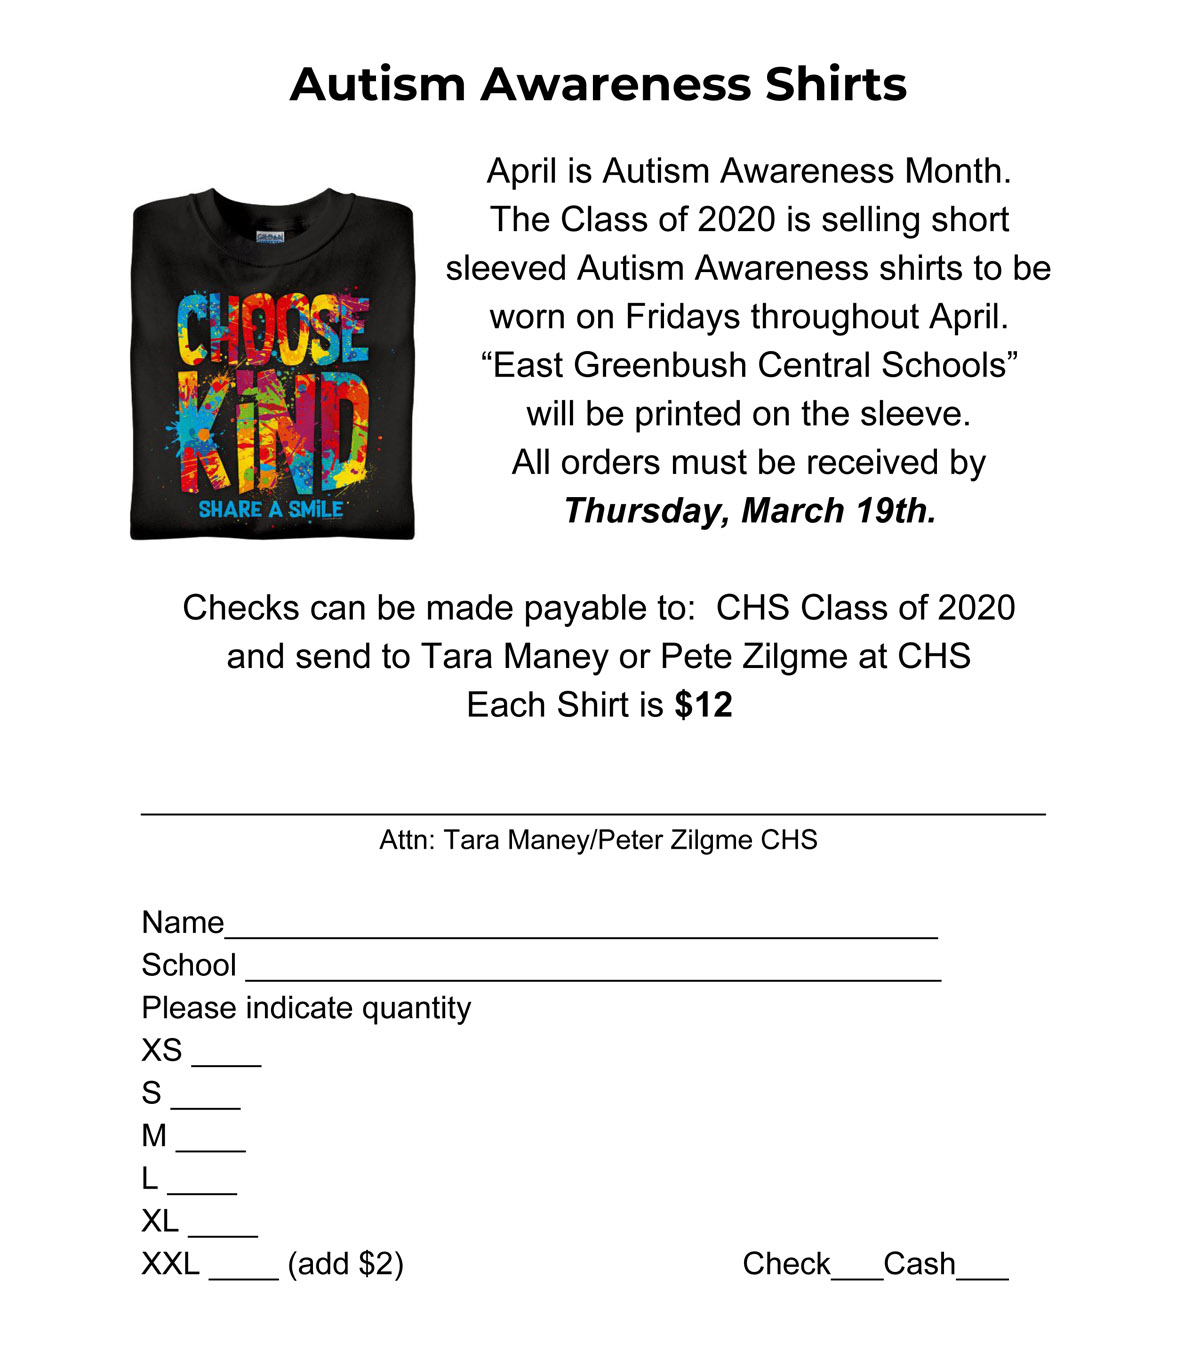 Autism Awareness shirt order form